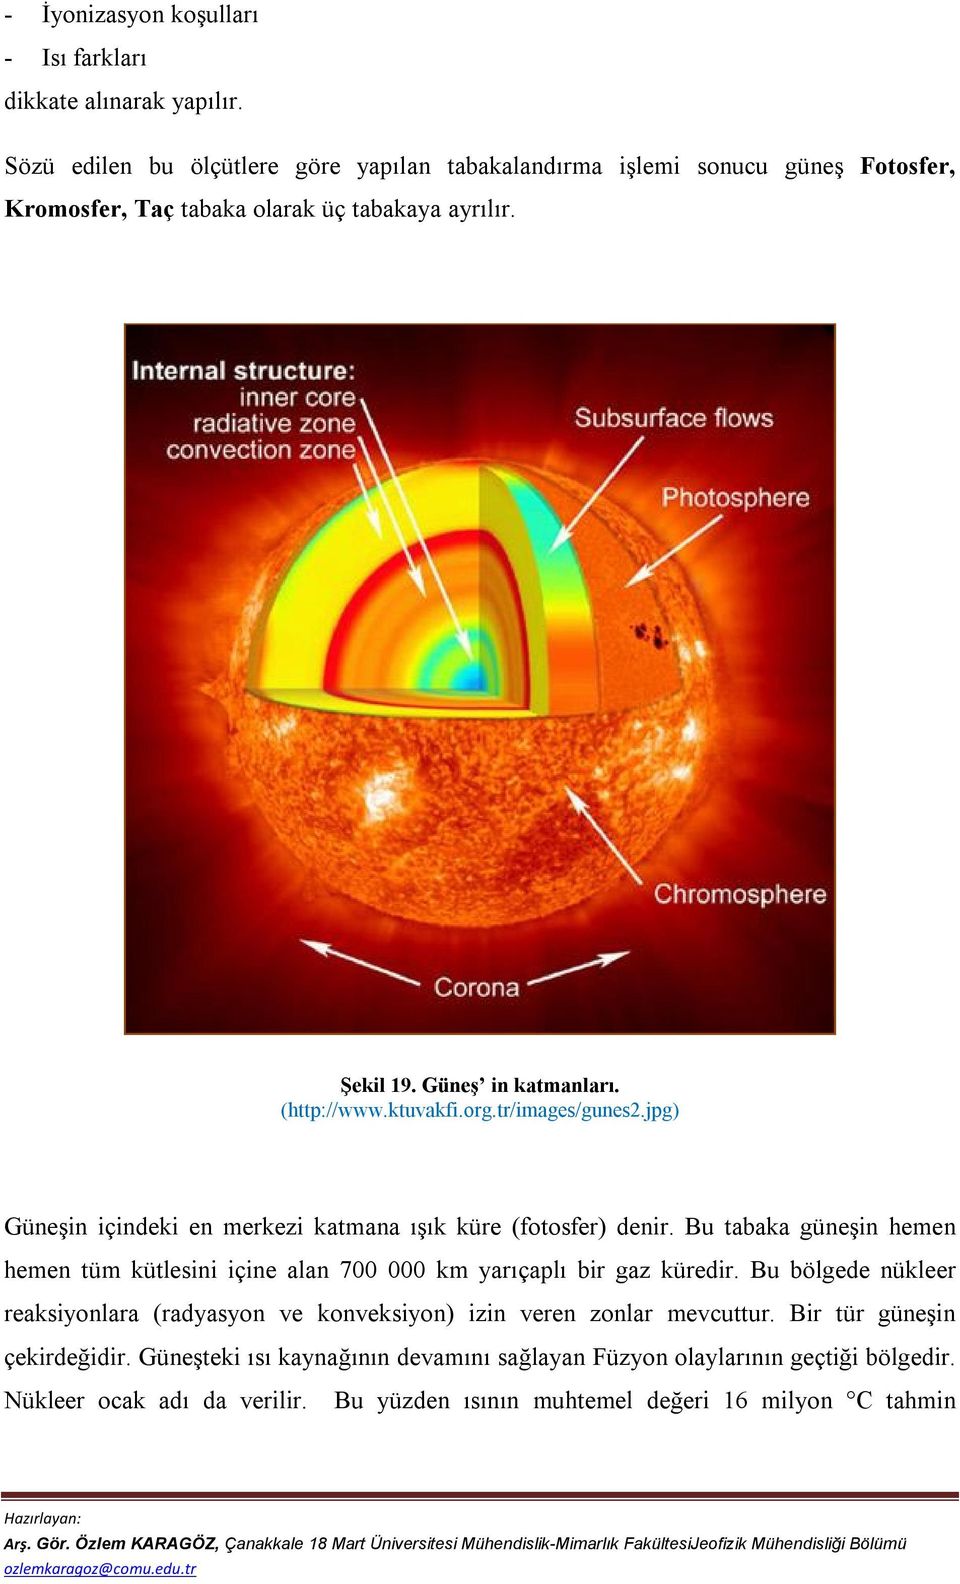 ktuvakfi.org.tr/images/gunes2.jpg) Güneşin içindeki en merkezi katmana ışık küre (fotosfer) denir.